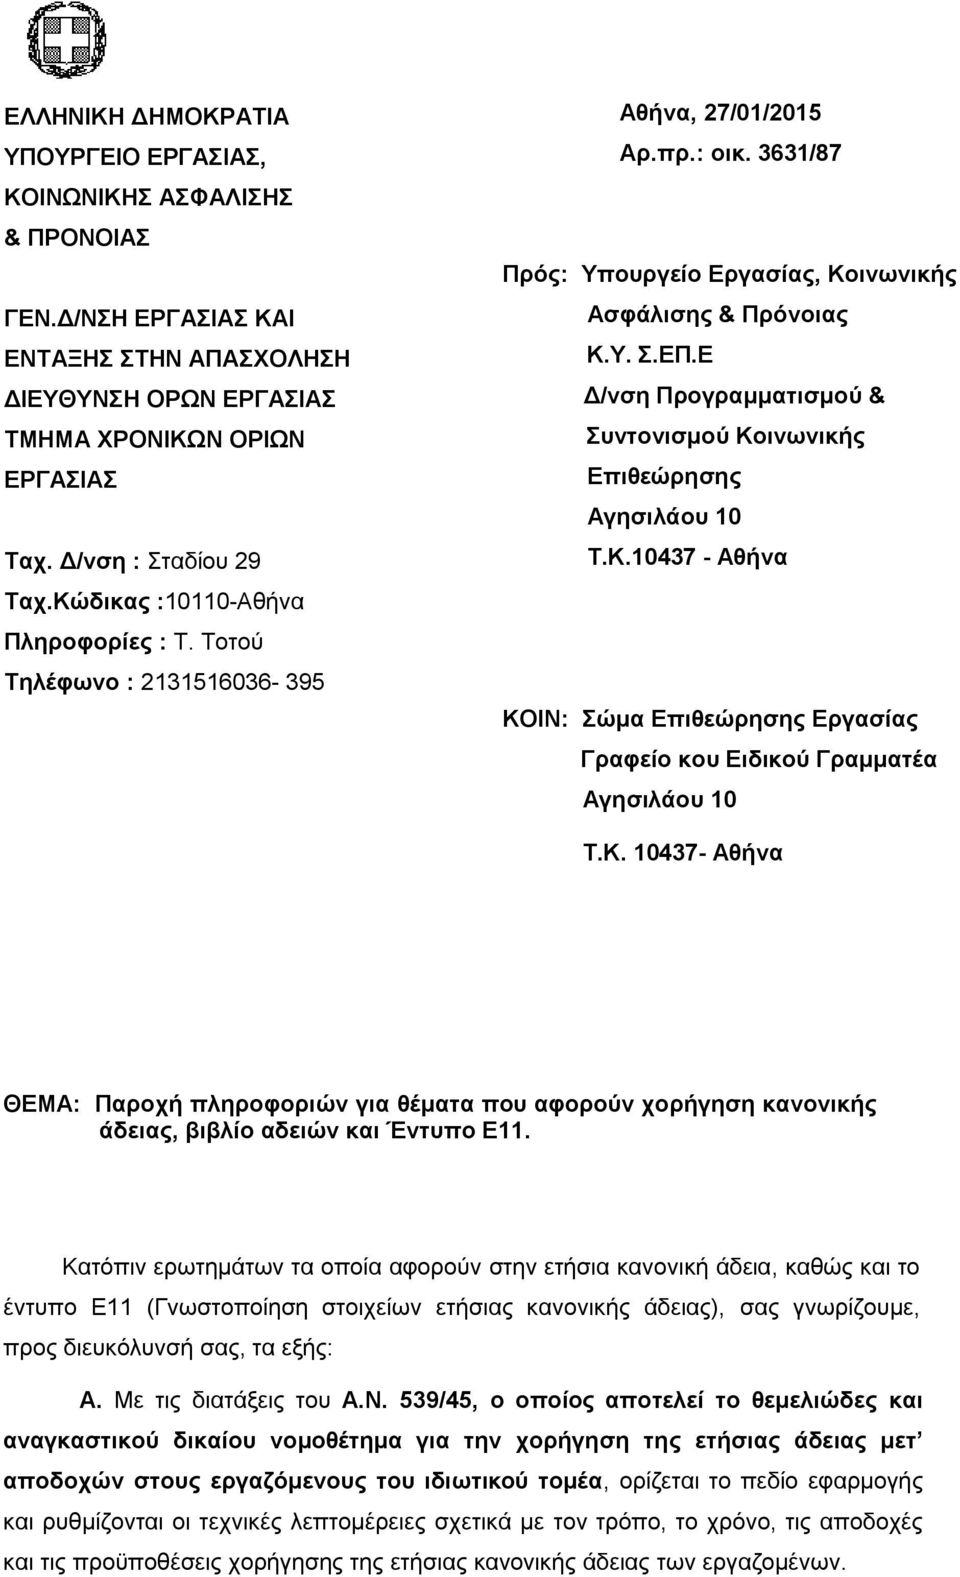 Ε Δ/νση Προγραμματισμού & Συντονισμού Κοινωνικής Επιθεώρησης Αγησιλάου 10 Τ.Κ.10437 - Αθήνα ΚΟΙΝ: Σώμα Επιθεώρησης Εργασίας Γραφείο κου Ειδικού Γραμματέα Αγησιλάου 10 Τ.Κ. 10437- Αθήνα ΘΕΜΑ: Παροχή πληροφοριών για θέματα που αφορούν χορήγηση κανονικής άδειας, βιβλίο αδειών και Έντυπο Ε11.